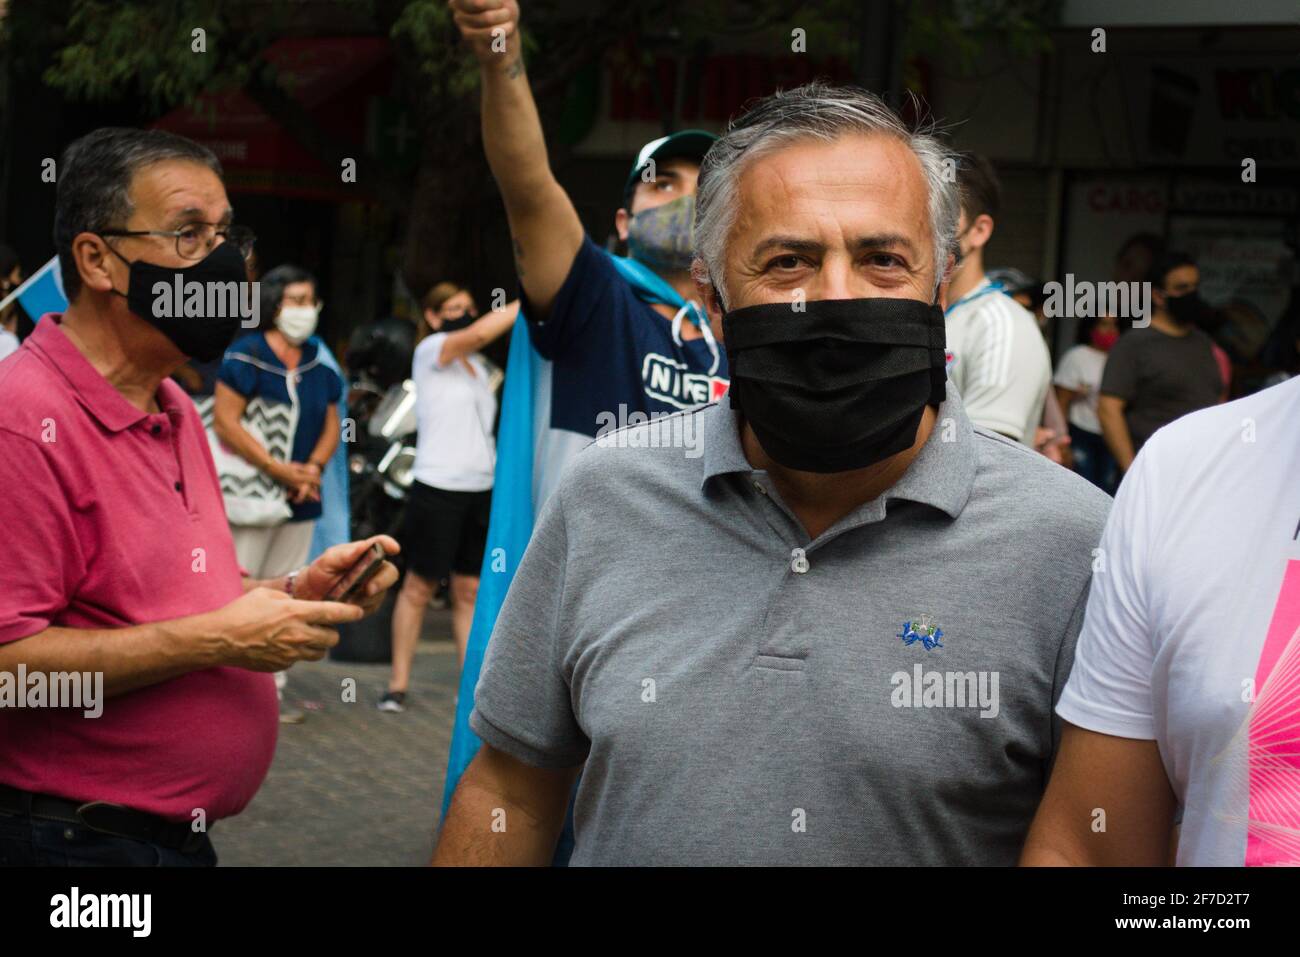 2021-02-27, Mendoza, Argentina - il deputato nazionale Alfredo Cornejo fa un'apparizione pubblica durante una protesta contro il governo nazionale. Foto Stock